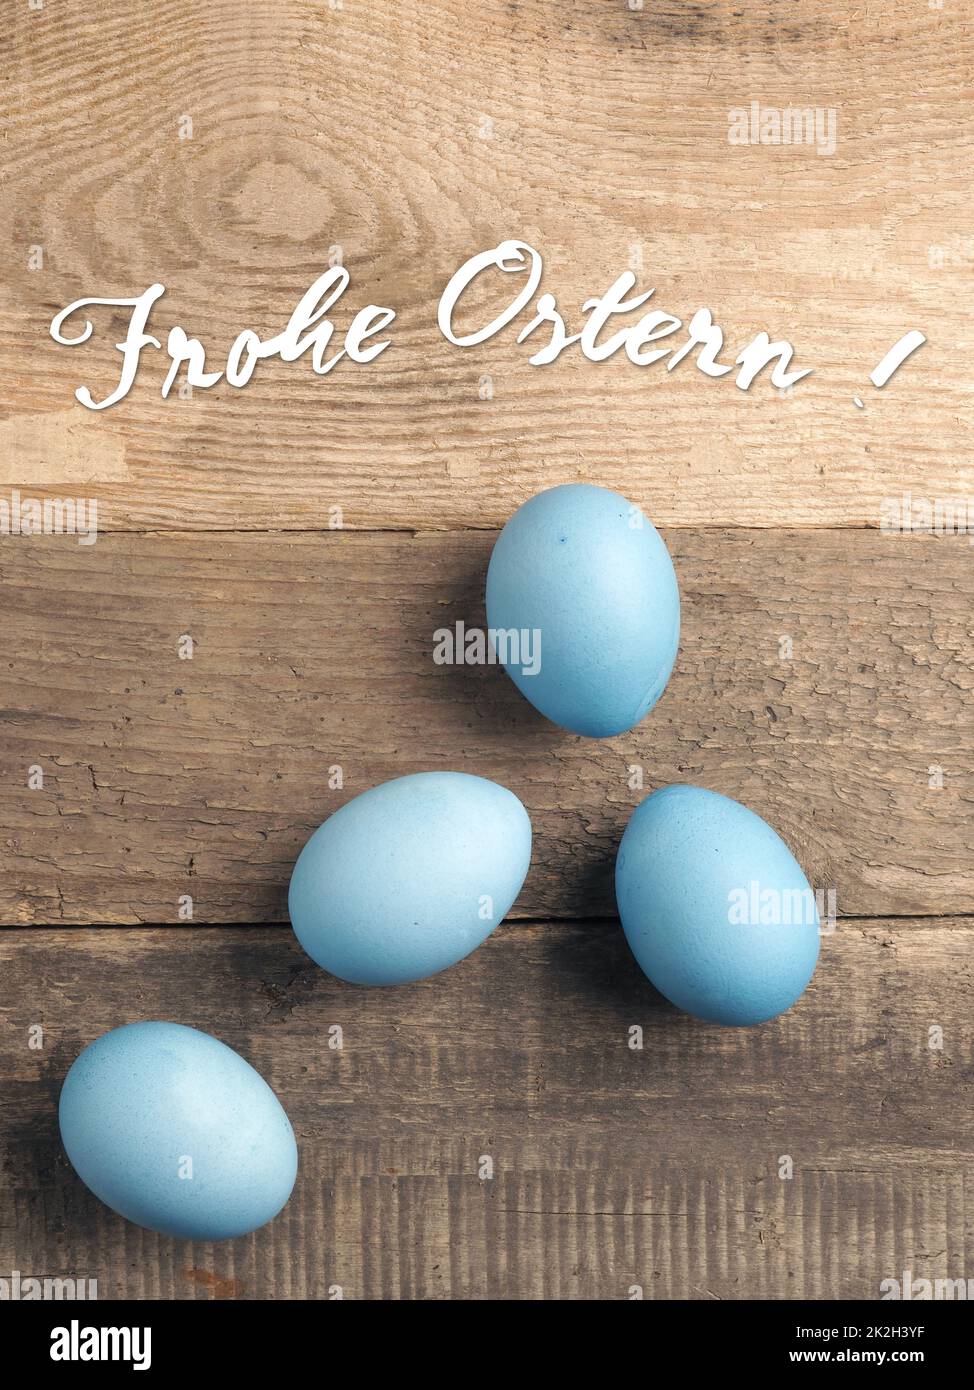 Joyeuses Pâques allemandes avec des œufs biologiques de couleur bleu naturel Banque D'Images